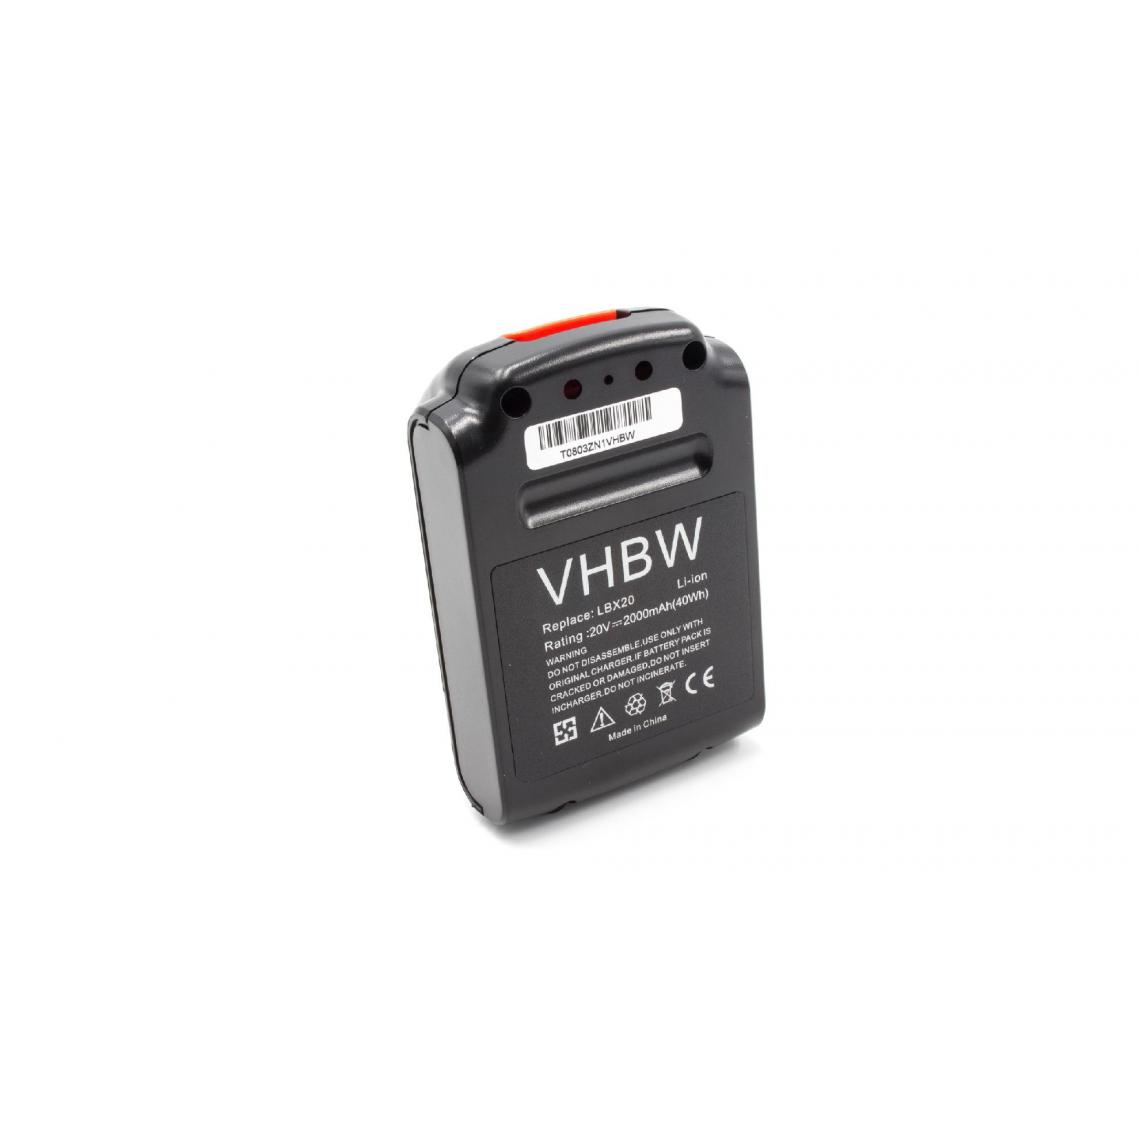 Vhbw - vhbw Batterie remplacement pour Black & Decker LB20 pour outil électrique (2000mAh Li-ion 20V) - Clouterie